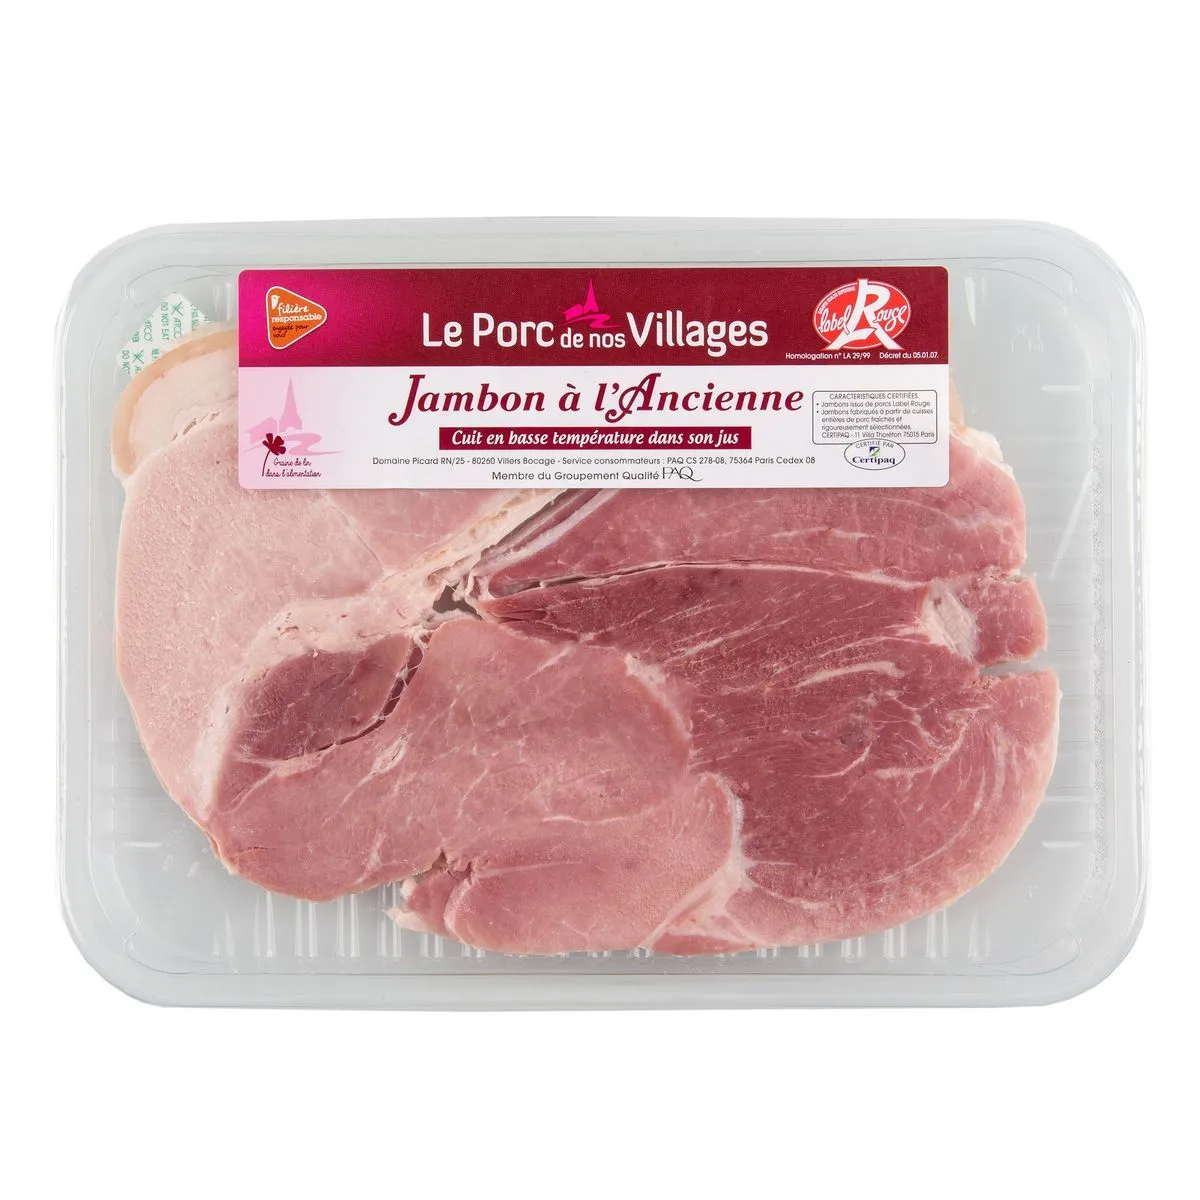 jambon cuit à l'ancienne label rouge filière auchan "cultivons le bon"